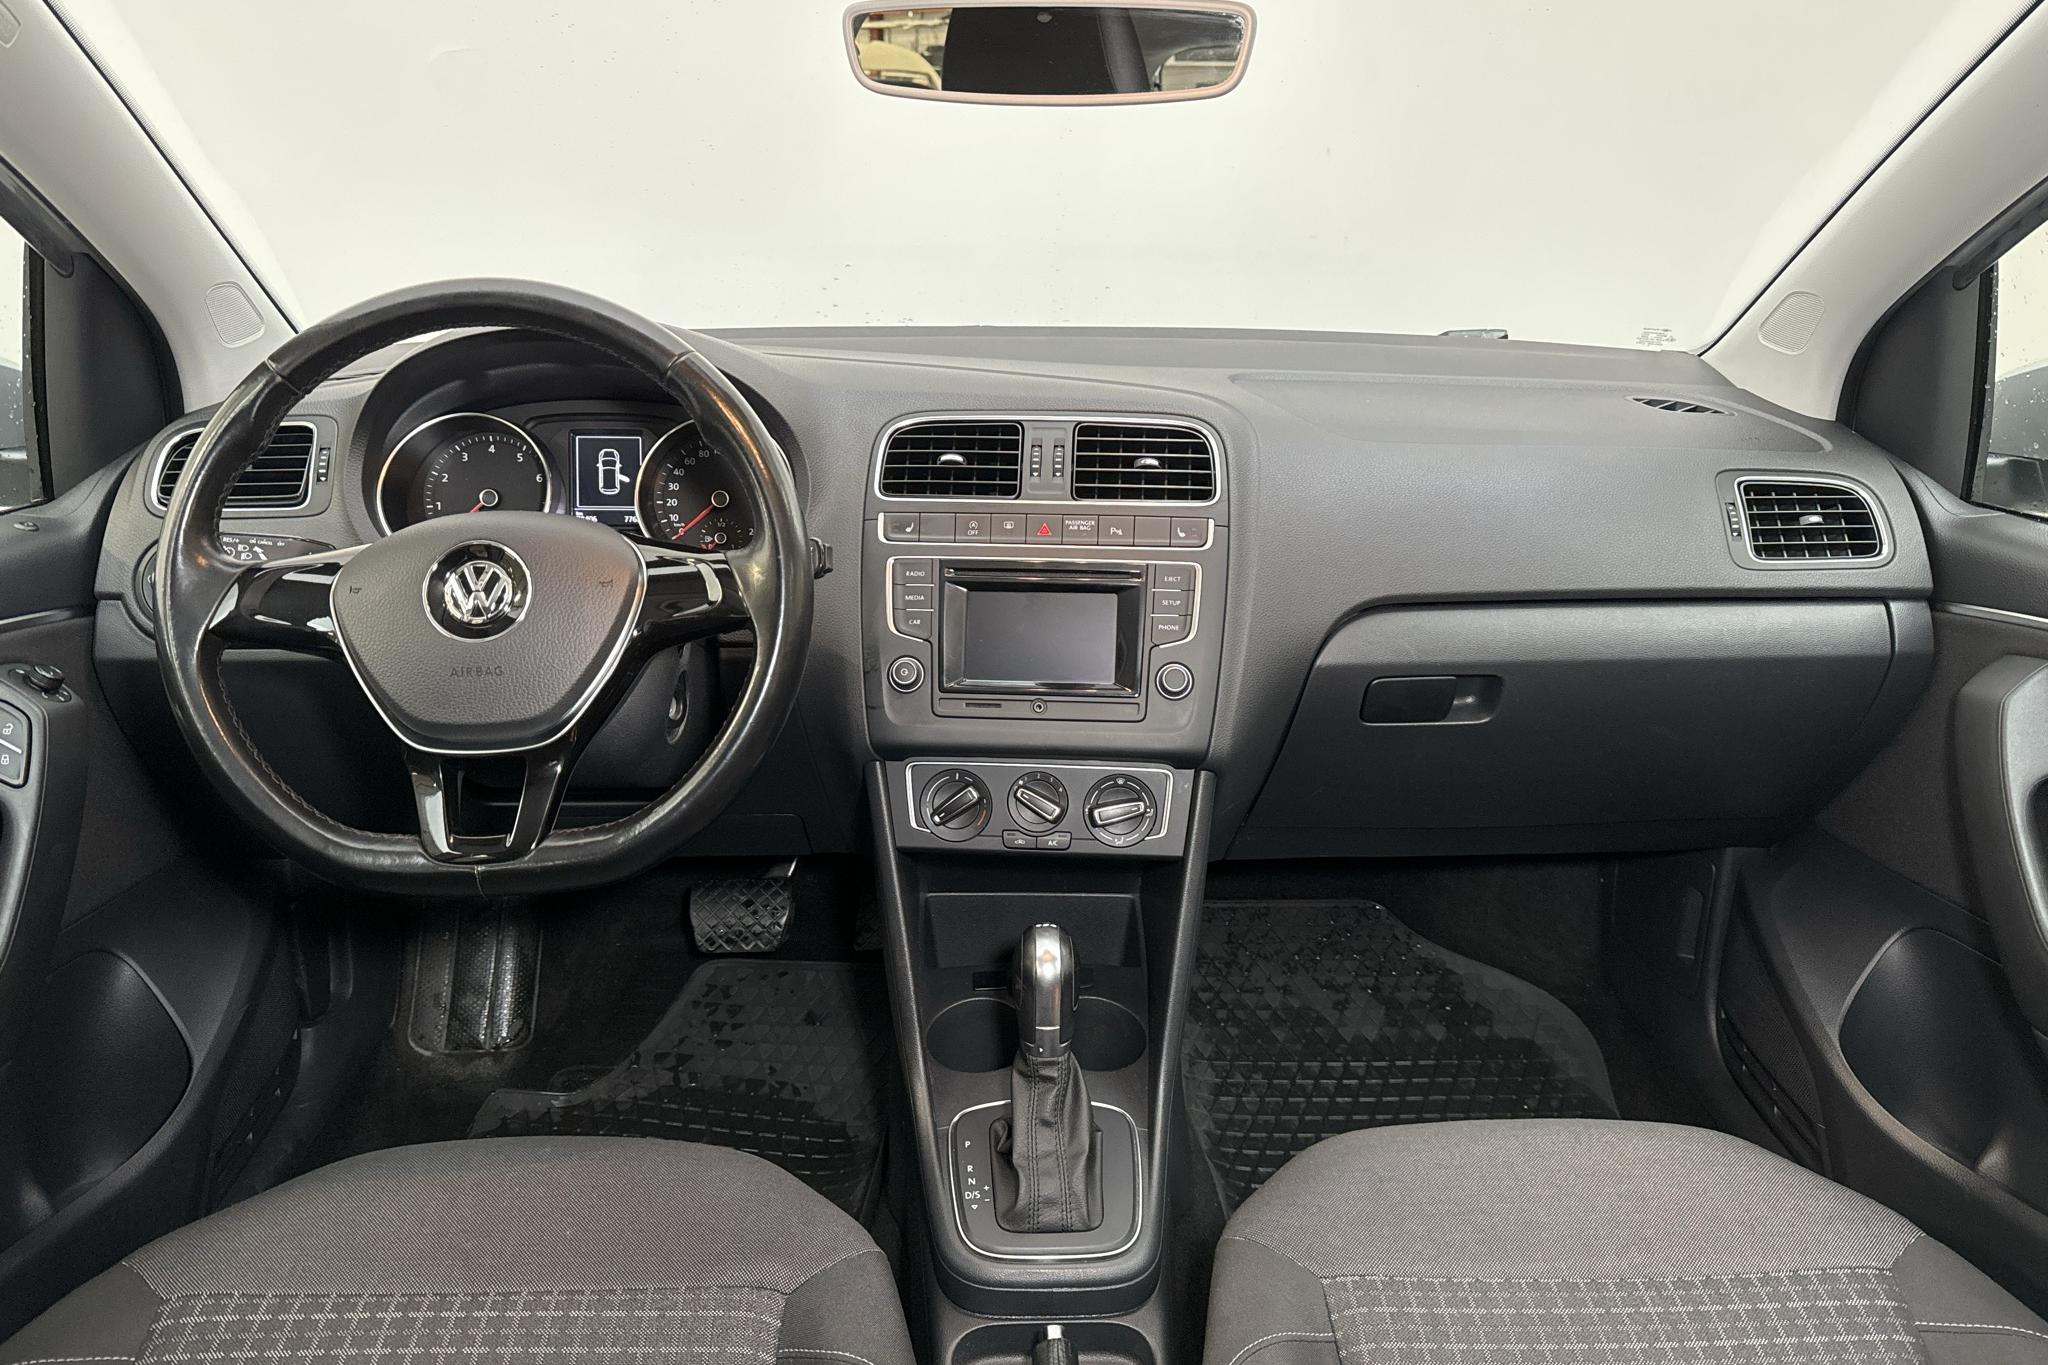 VW Polo 1.2 TSI 5dr (90hk) - 78 400 km - Automaatne - hõbe - 2017